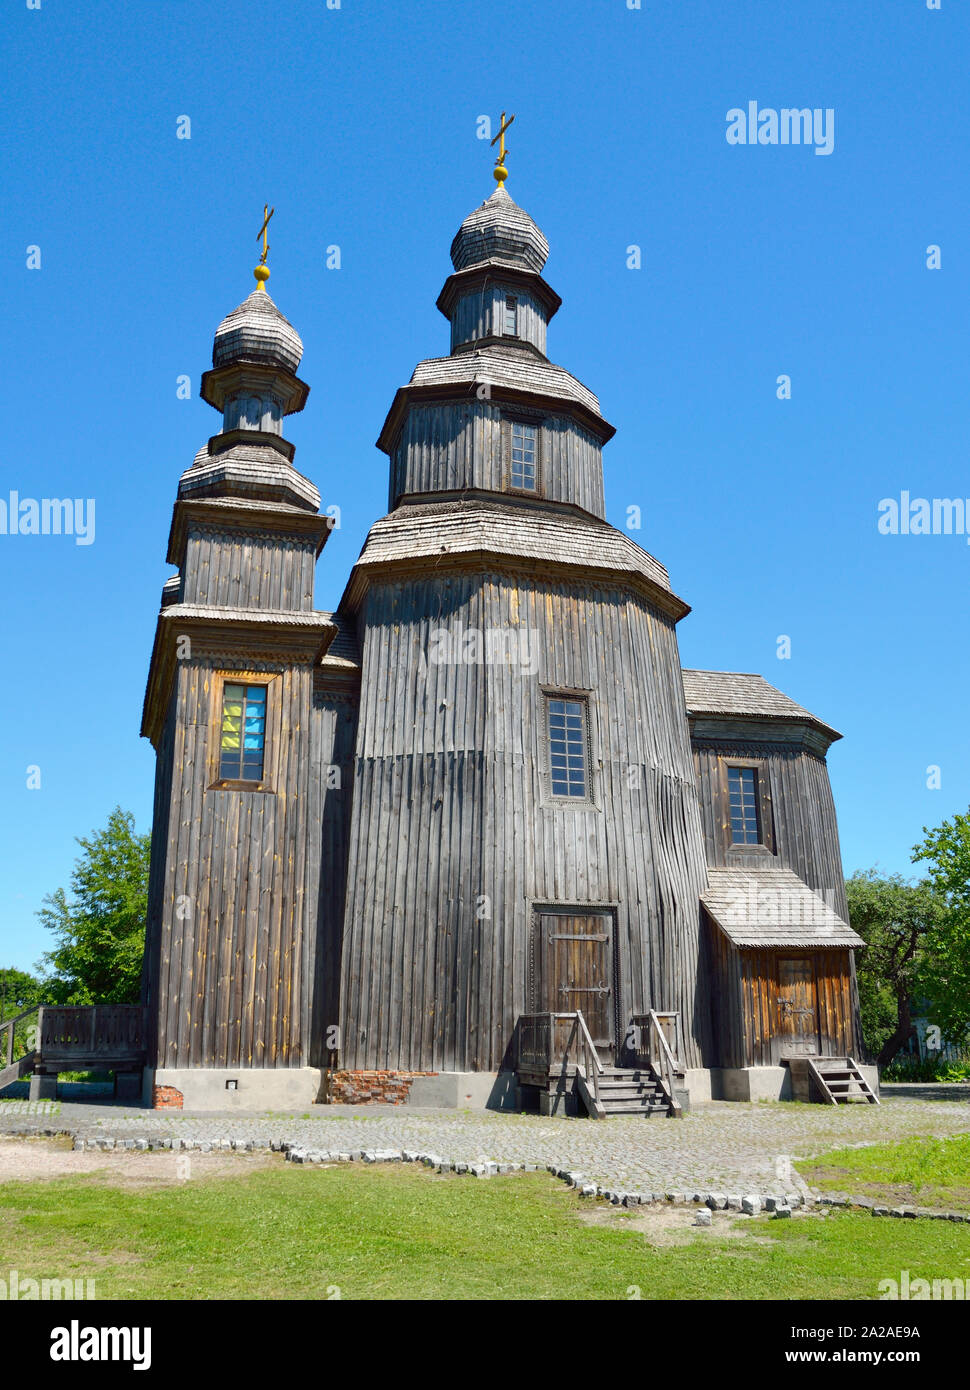 Alte Holz- orthodoxen Kirche. Auf Hintergrund mit blauer Himmel Stockfoto